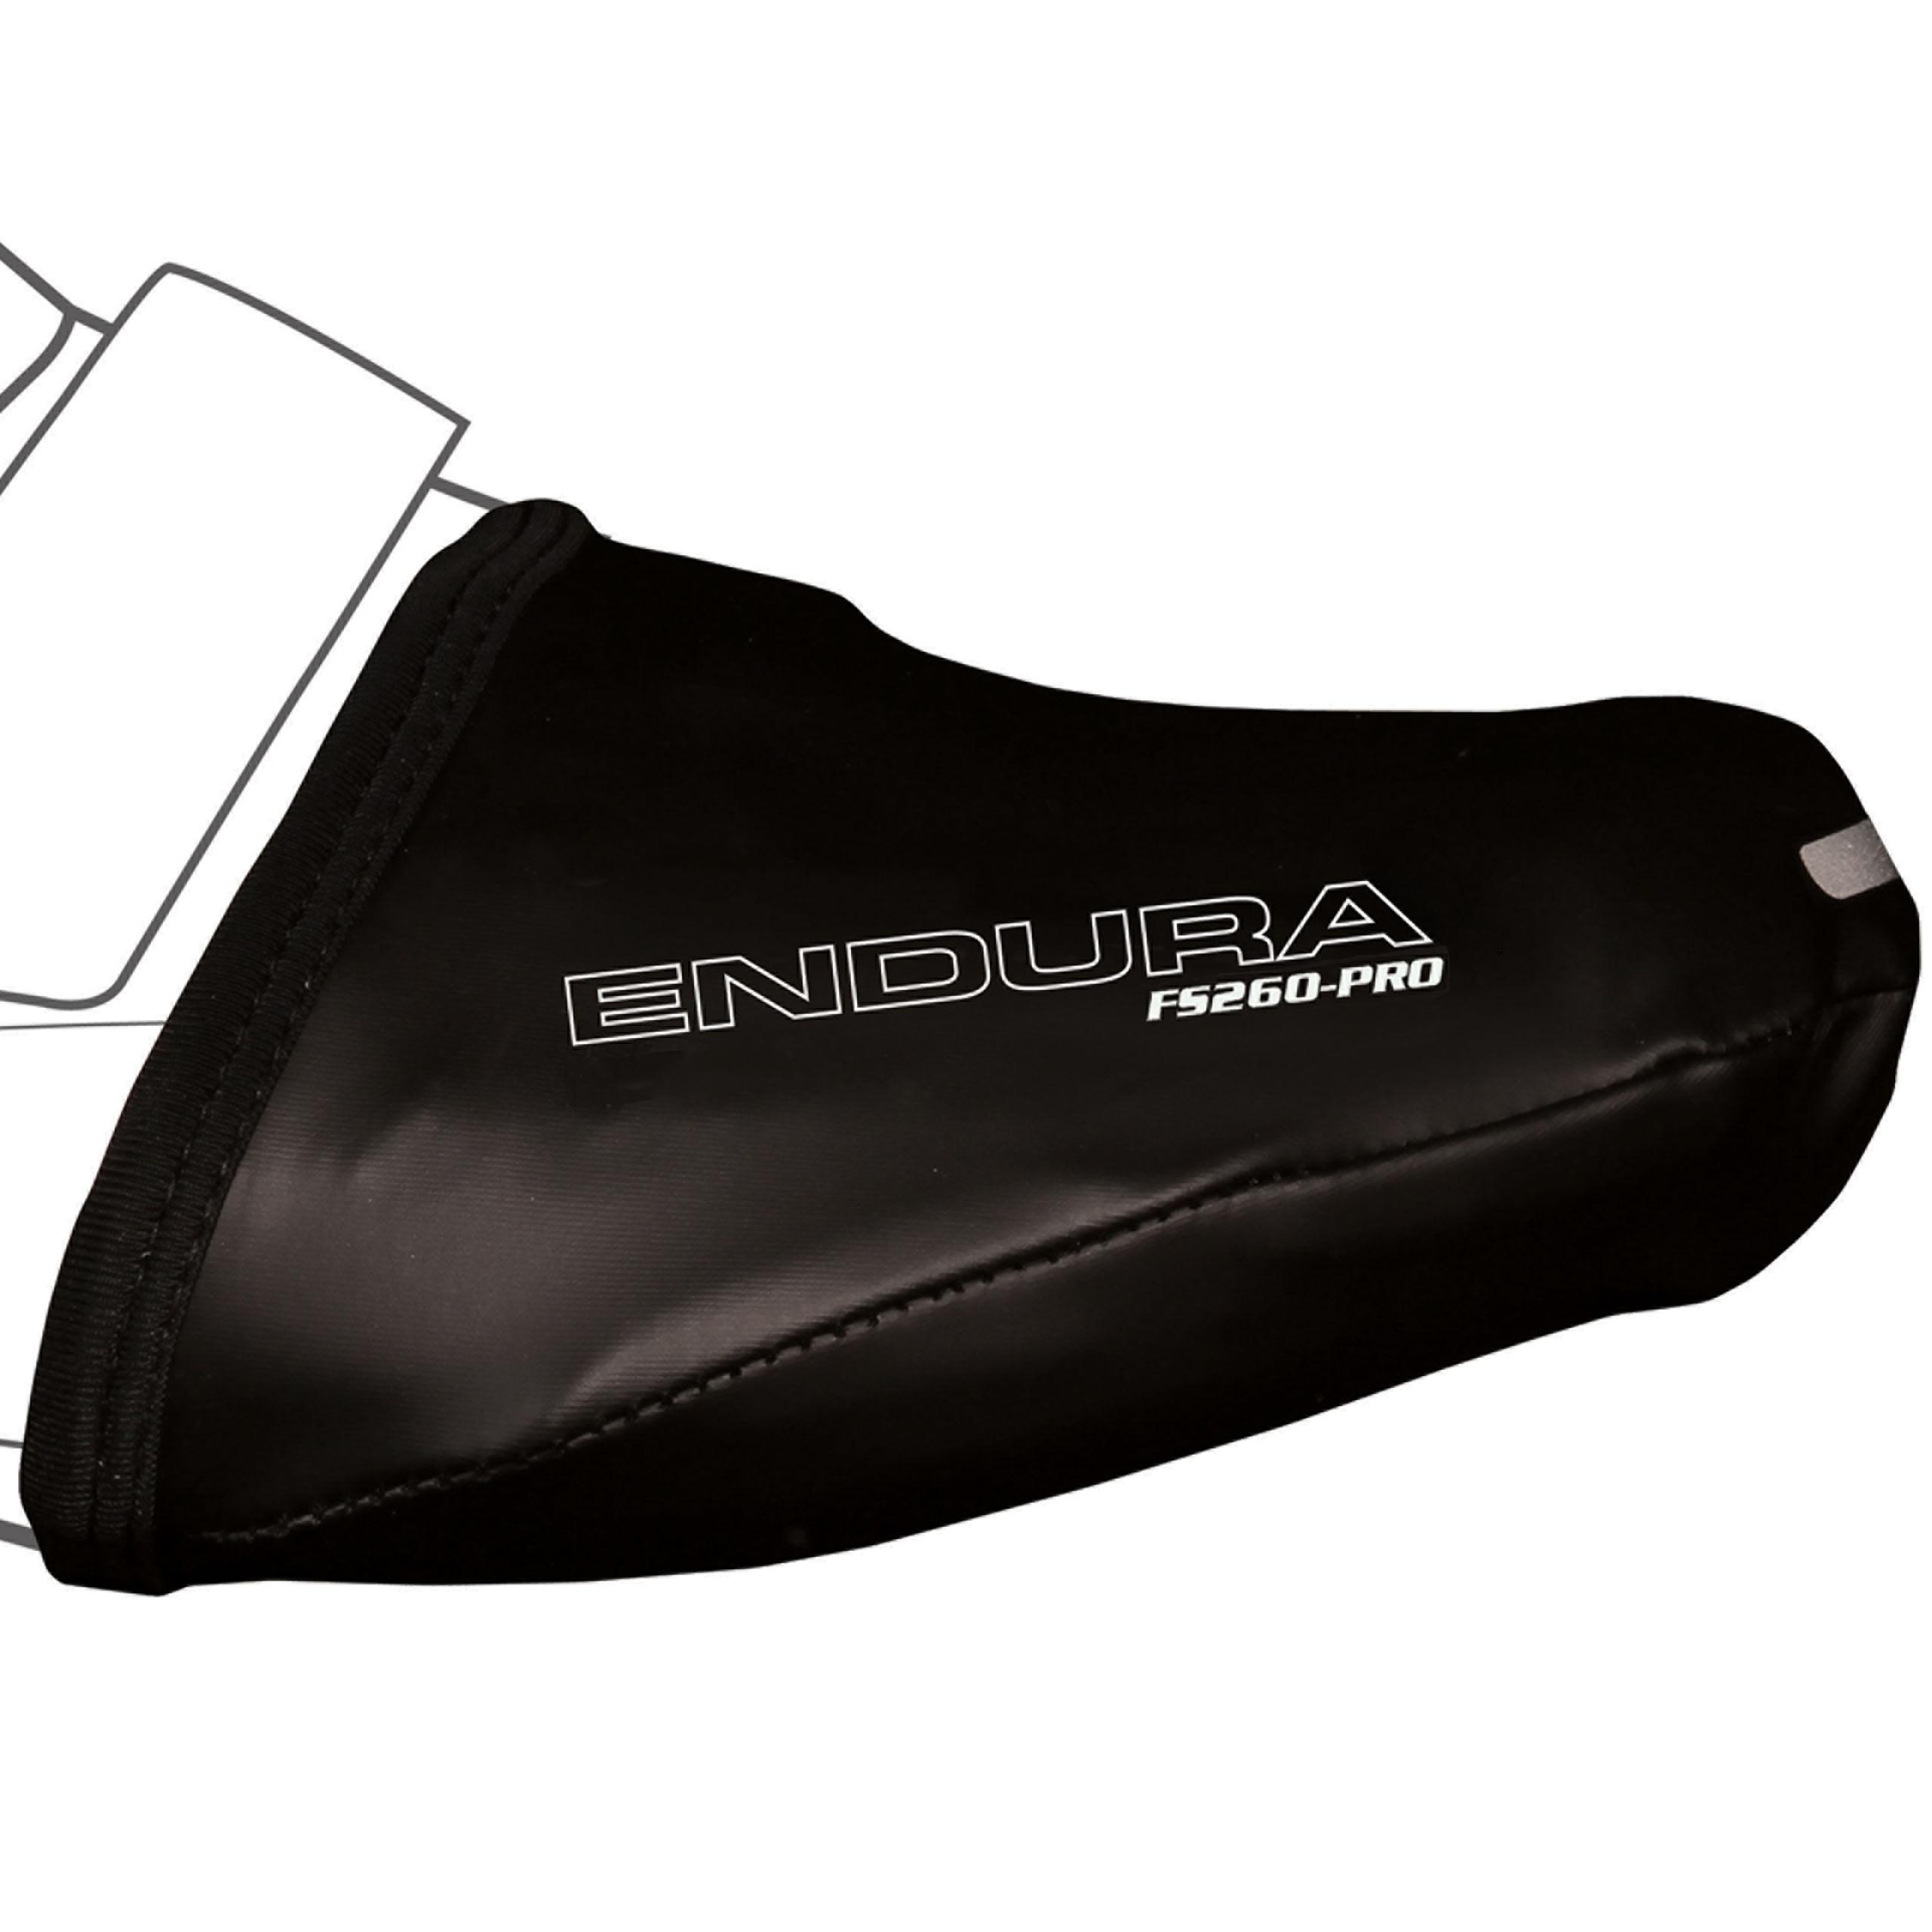 Endura Fs260 Pro Slick Overshoe Toe Cover - Black